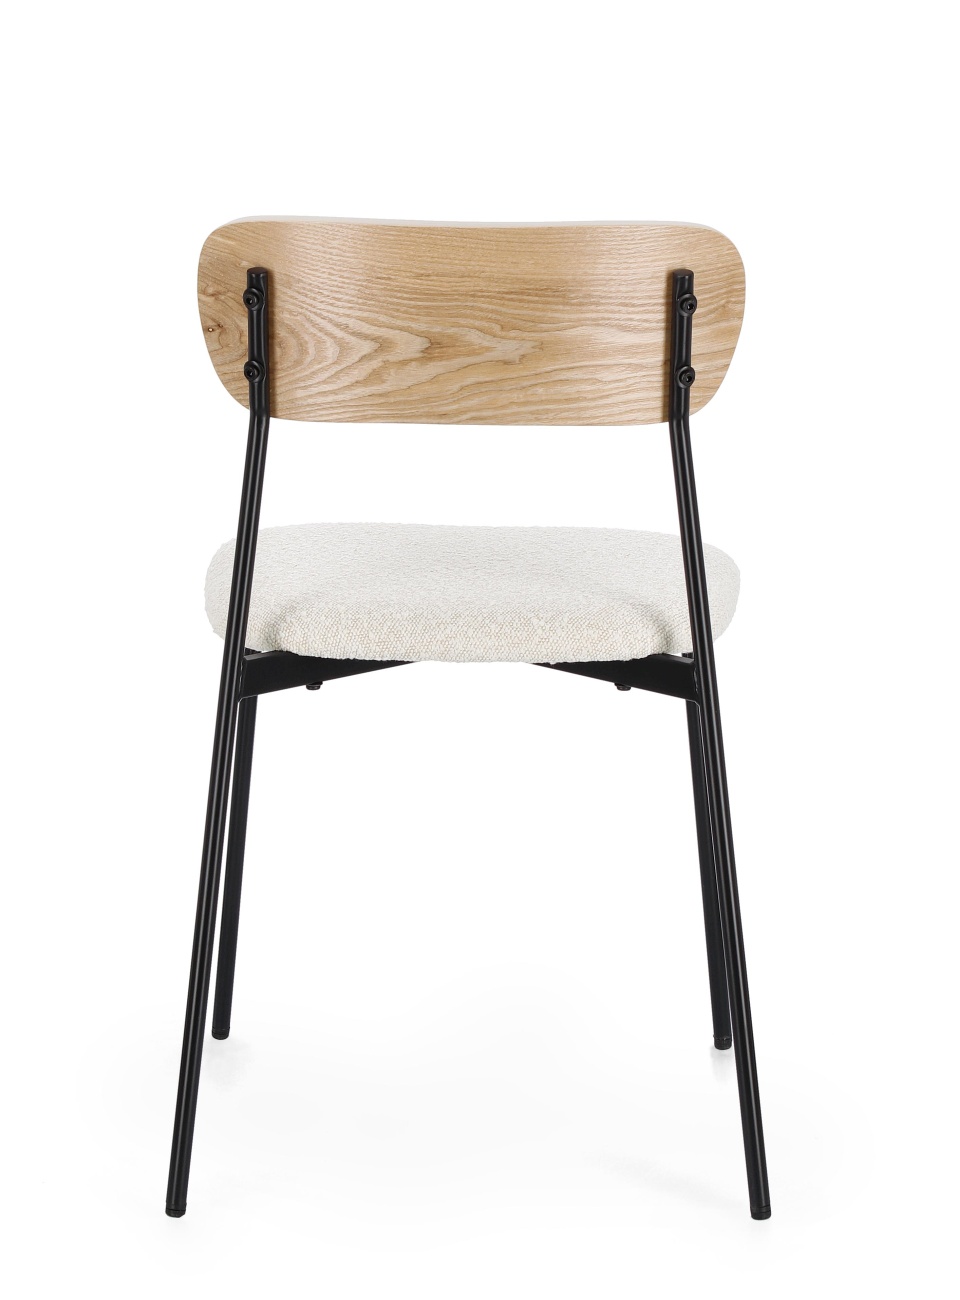 Der Esszimmerstuhl Genevieve überzeugt mit seinem modernen Stil. Gefertigt wurde er aus Boucle-Stoff, welcher einen natürlichen Farbton besitzt. Das Gestell ist aus Metall und hat eine schwarze Farbe. Der Stuhl besitzt eine Sitzhöhe von 48 cm.